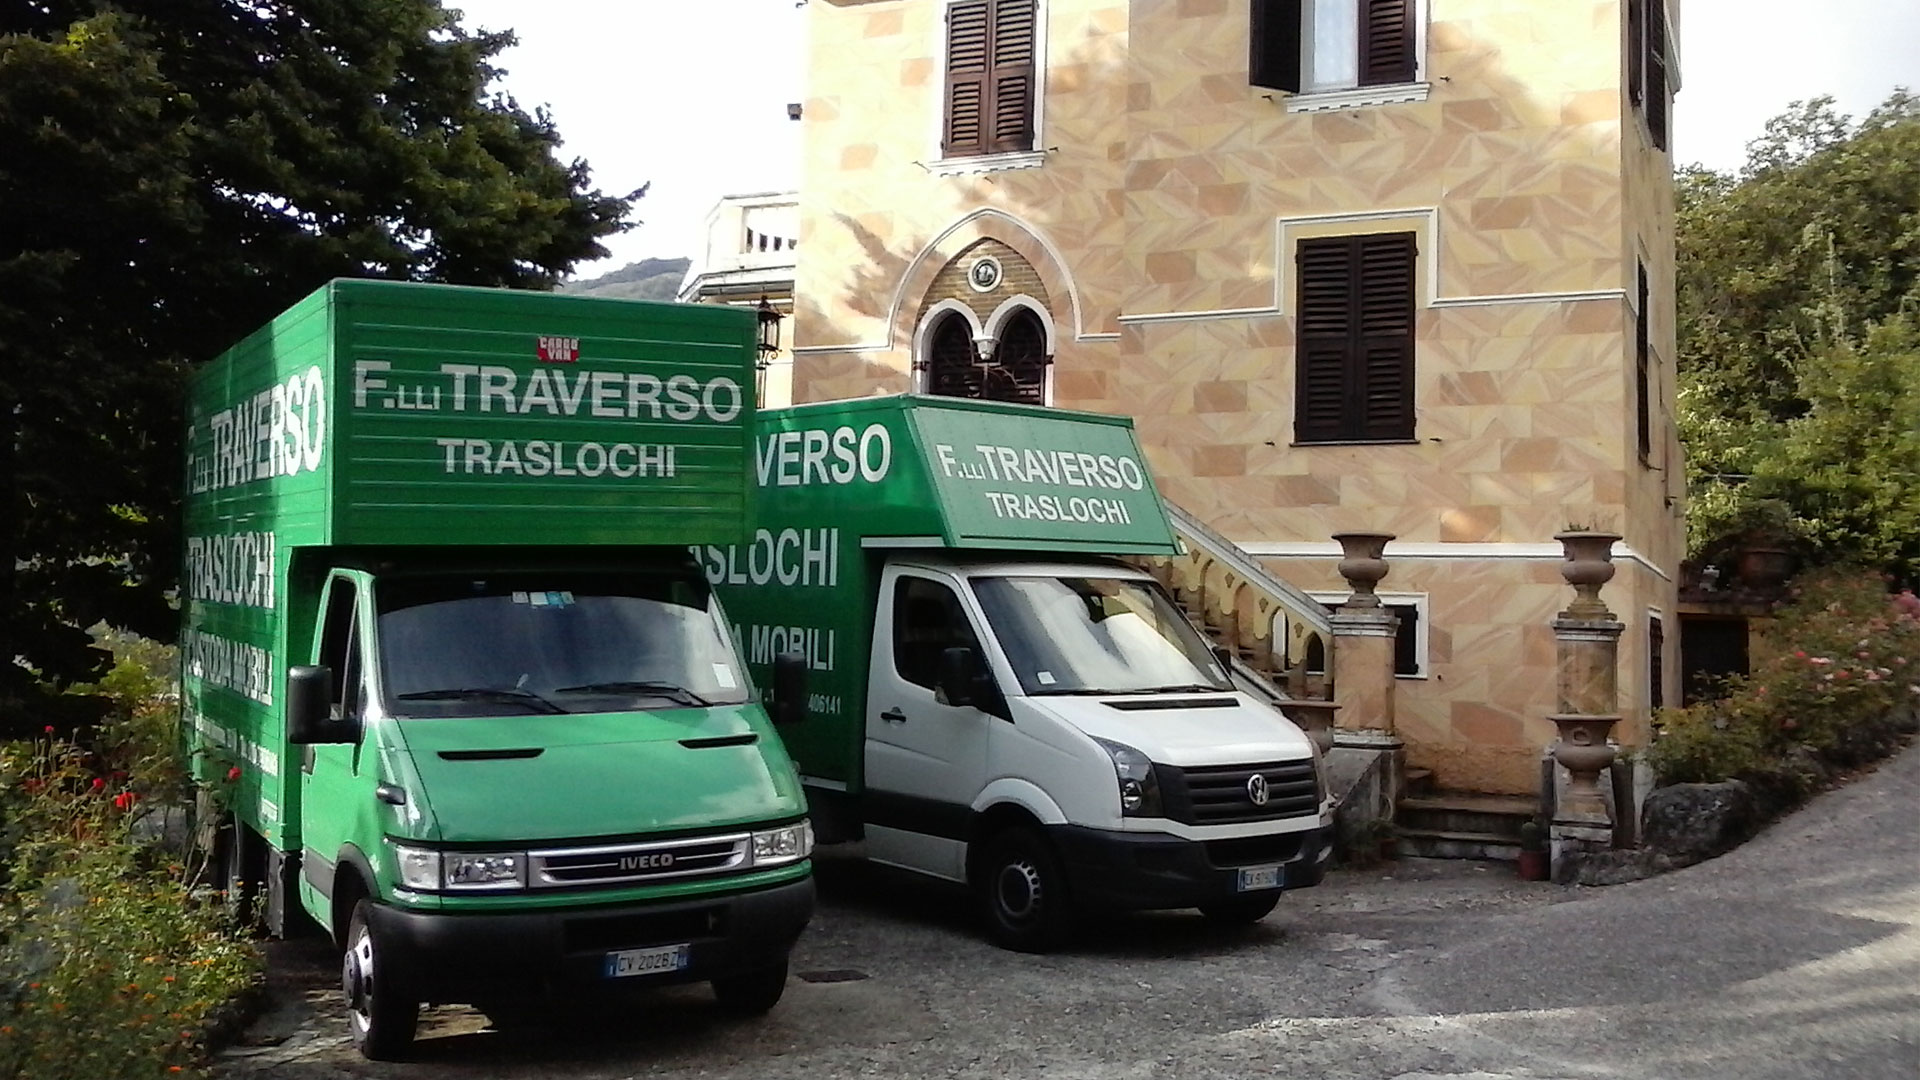 I camion di Fratelli Traverso Traslochi, durante un trasloco in una villa.